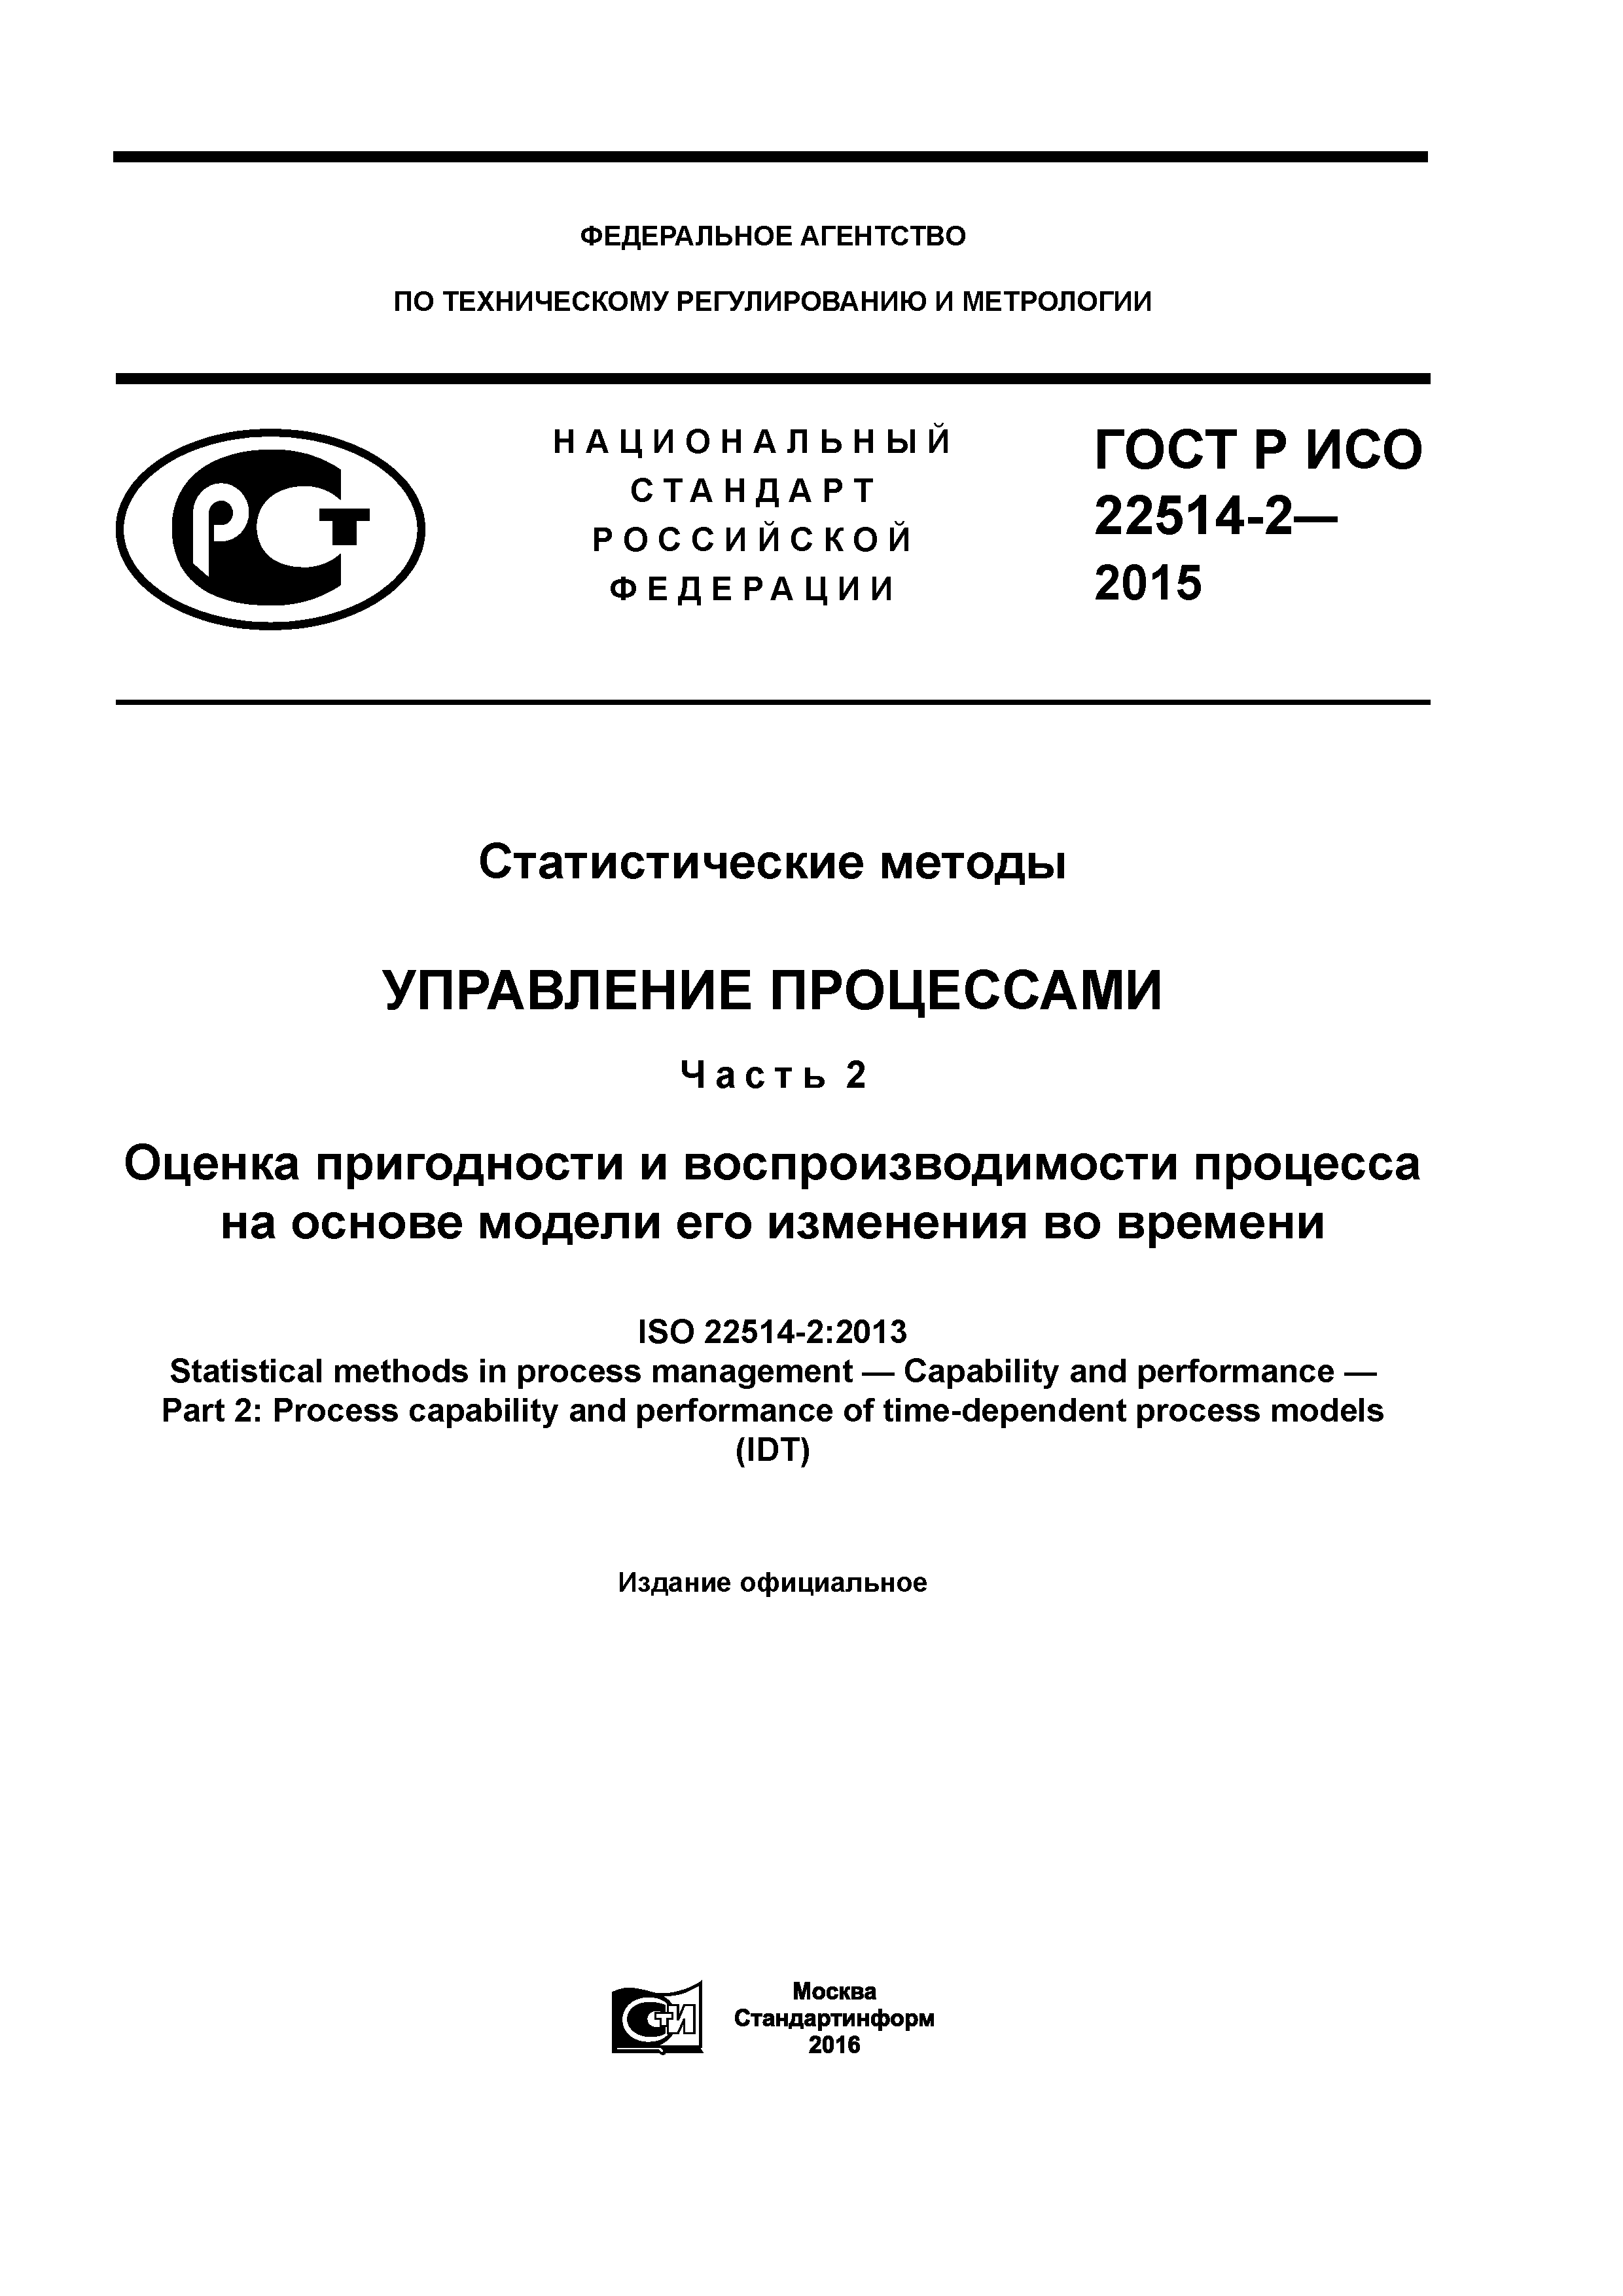 ГОСТ Р ИСО 22514-2-2015